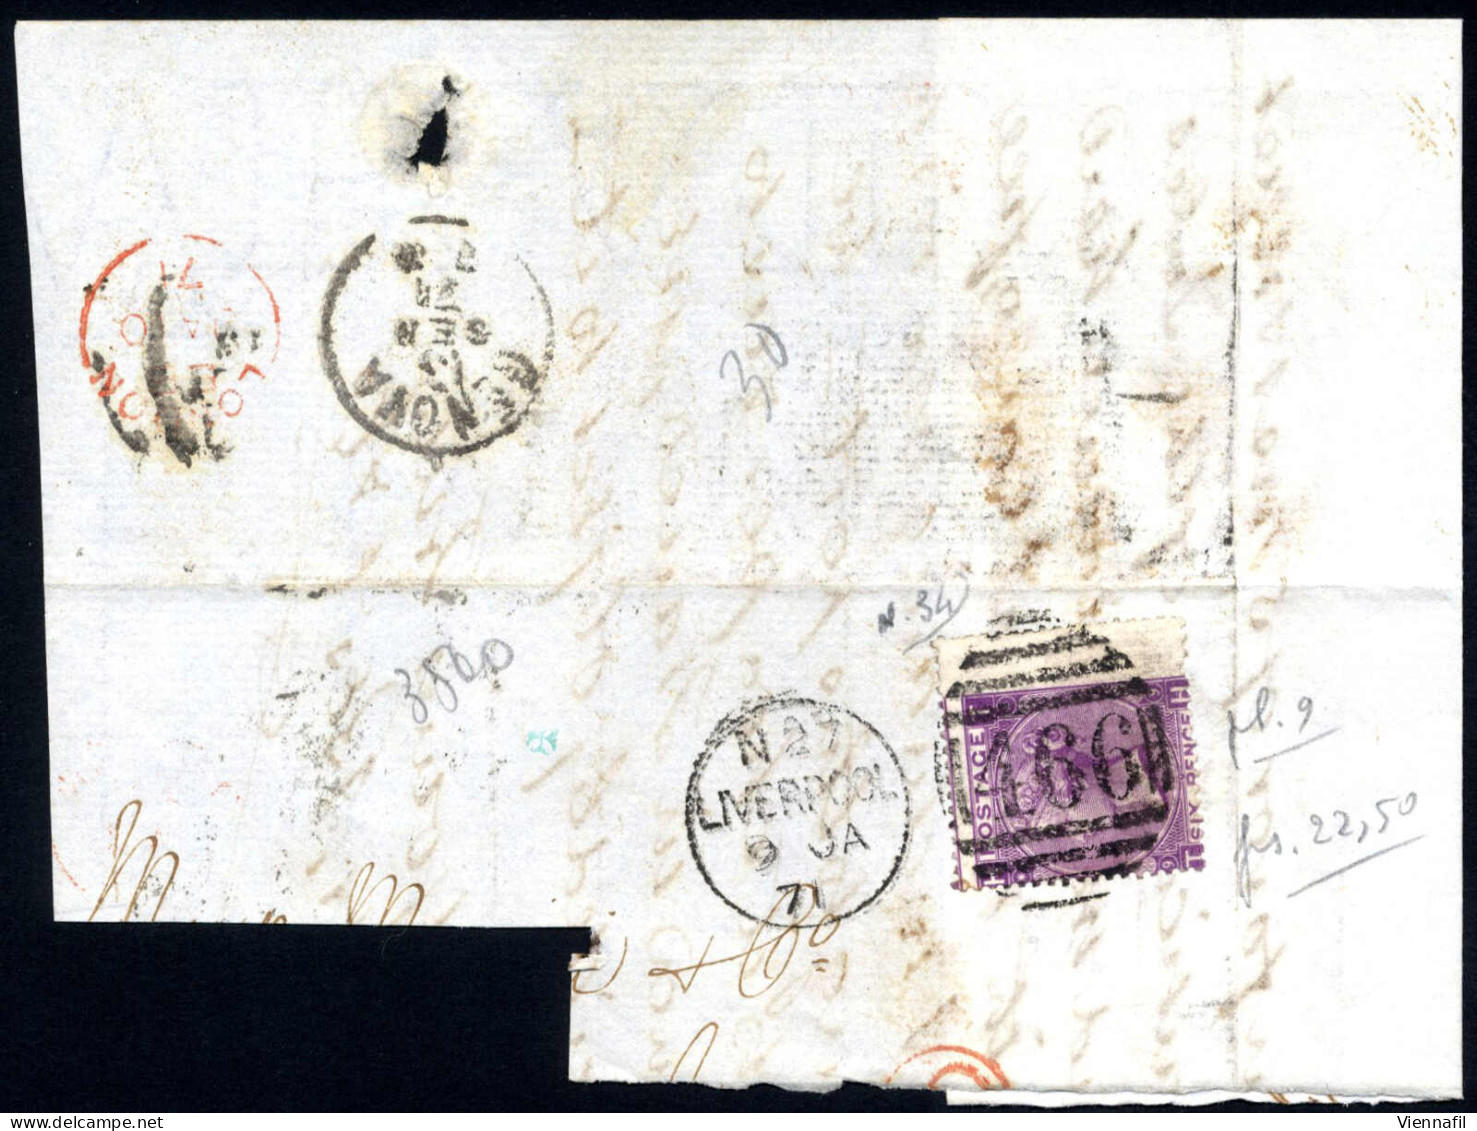 cover Grossbritannien 1869, zwei Briefe und fünf große Briefstücke frankiert mit 6 P. violett mit Plattennummer 8+9 mit 